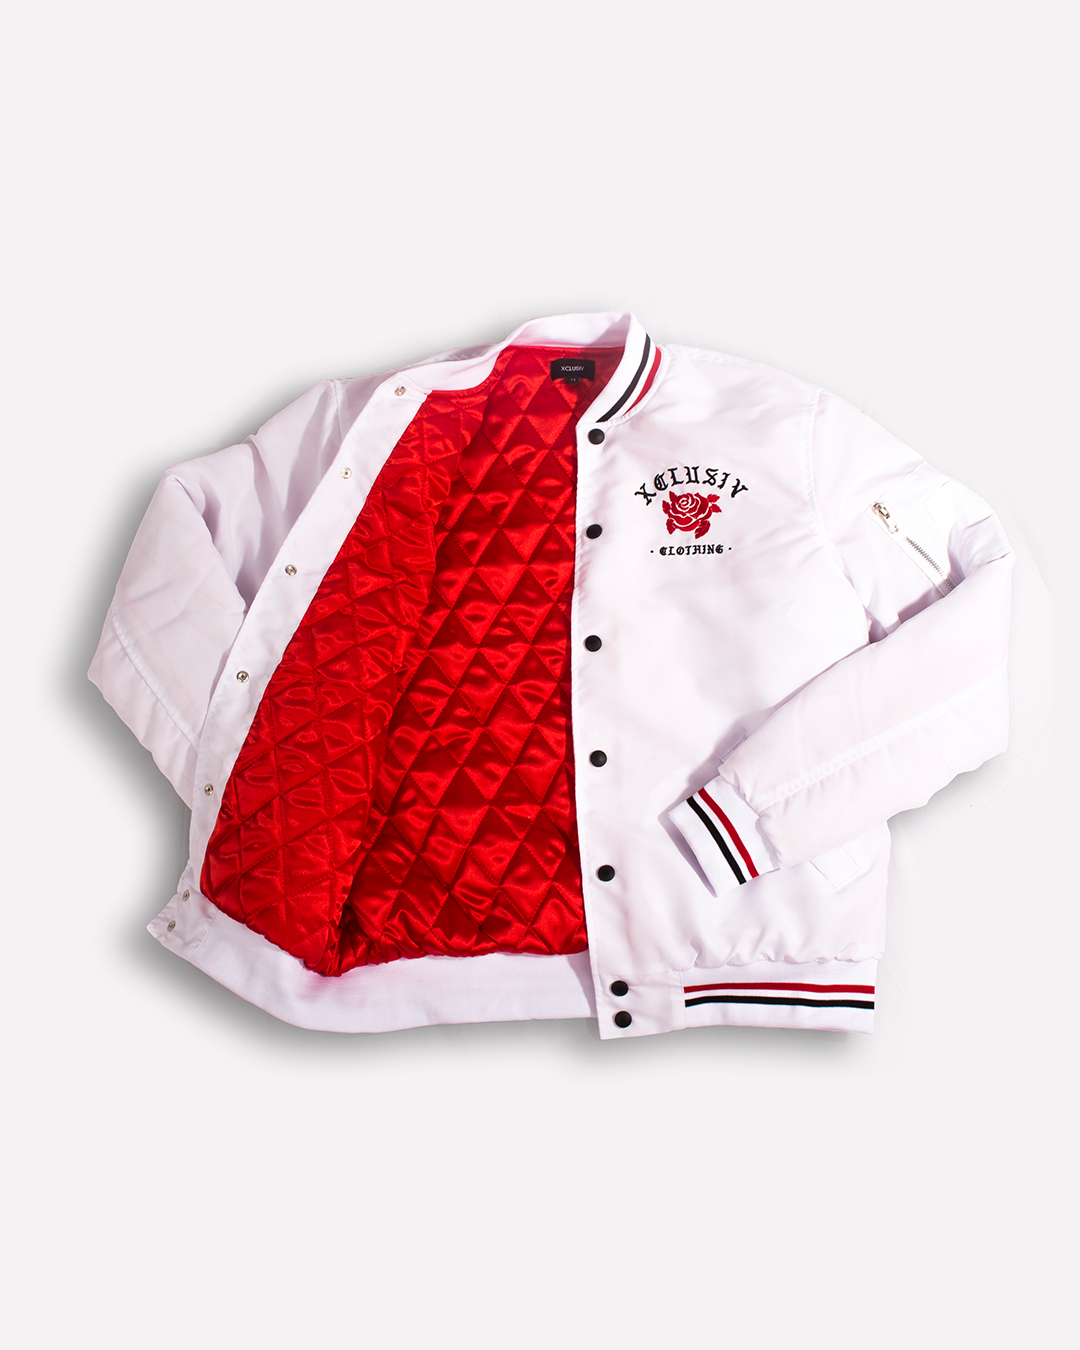 XCLUSIV WHITE ROSE BOMBER JACKET - Xclusiv Clothing Company